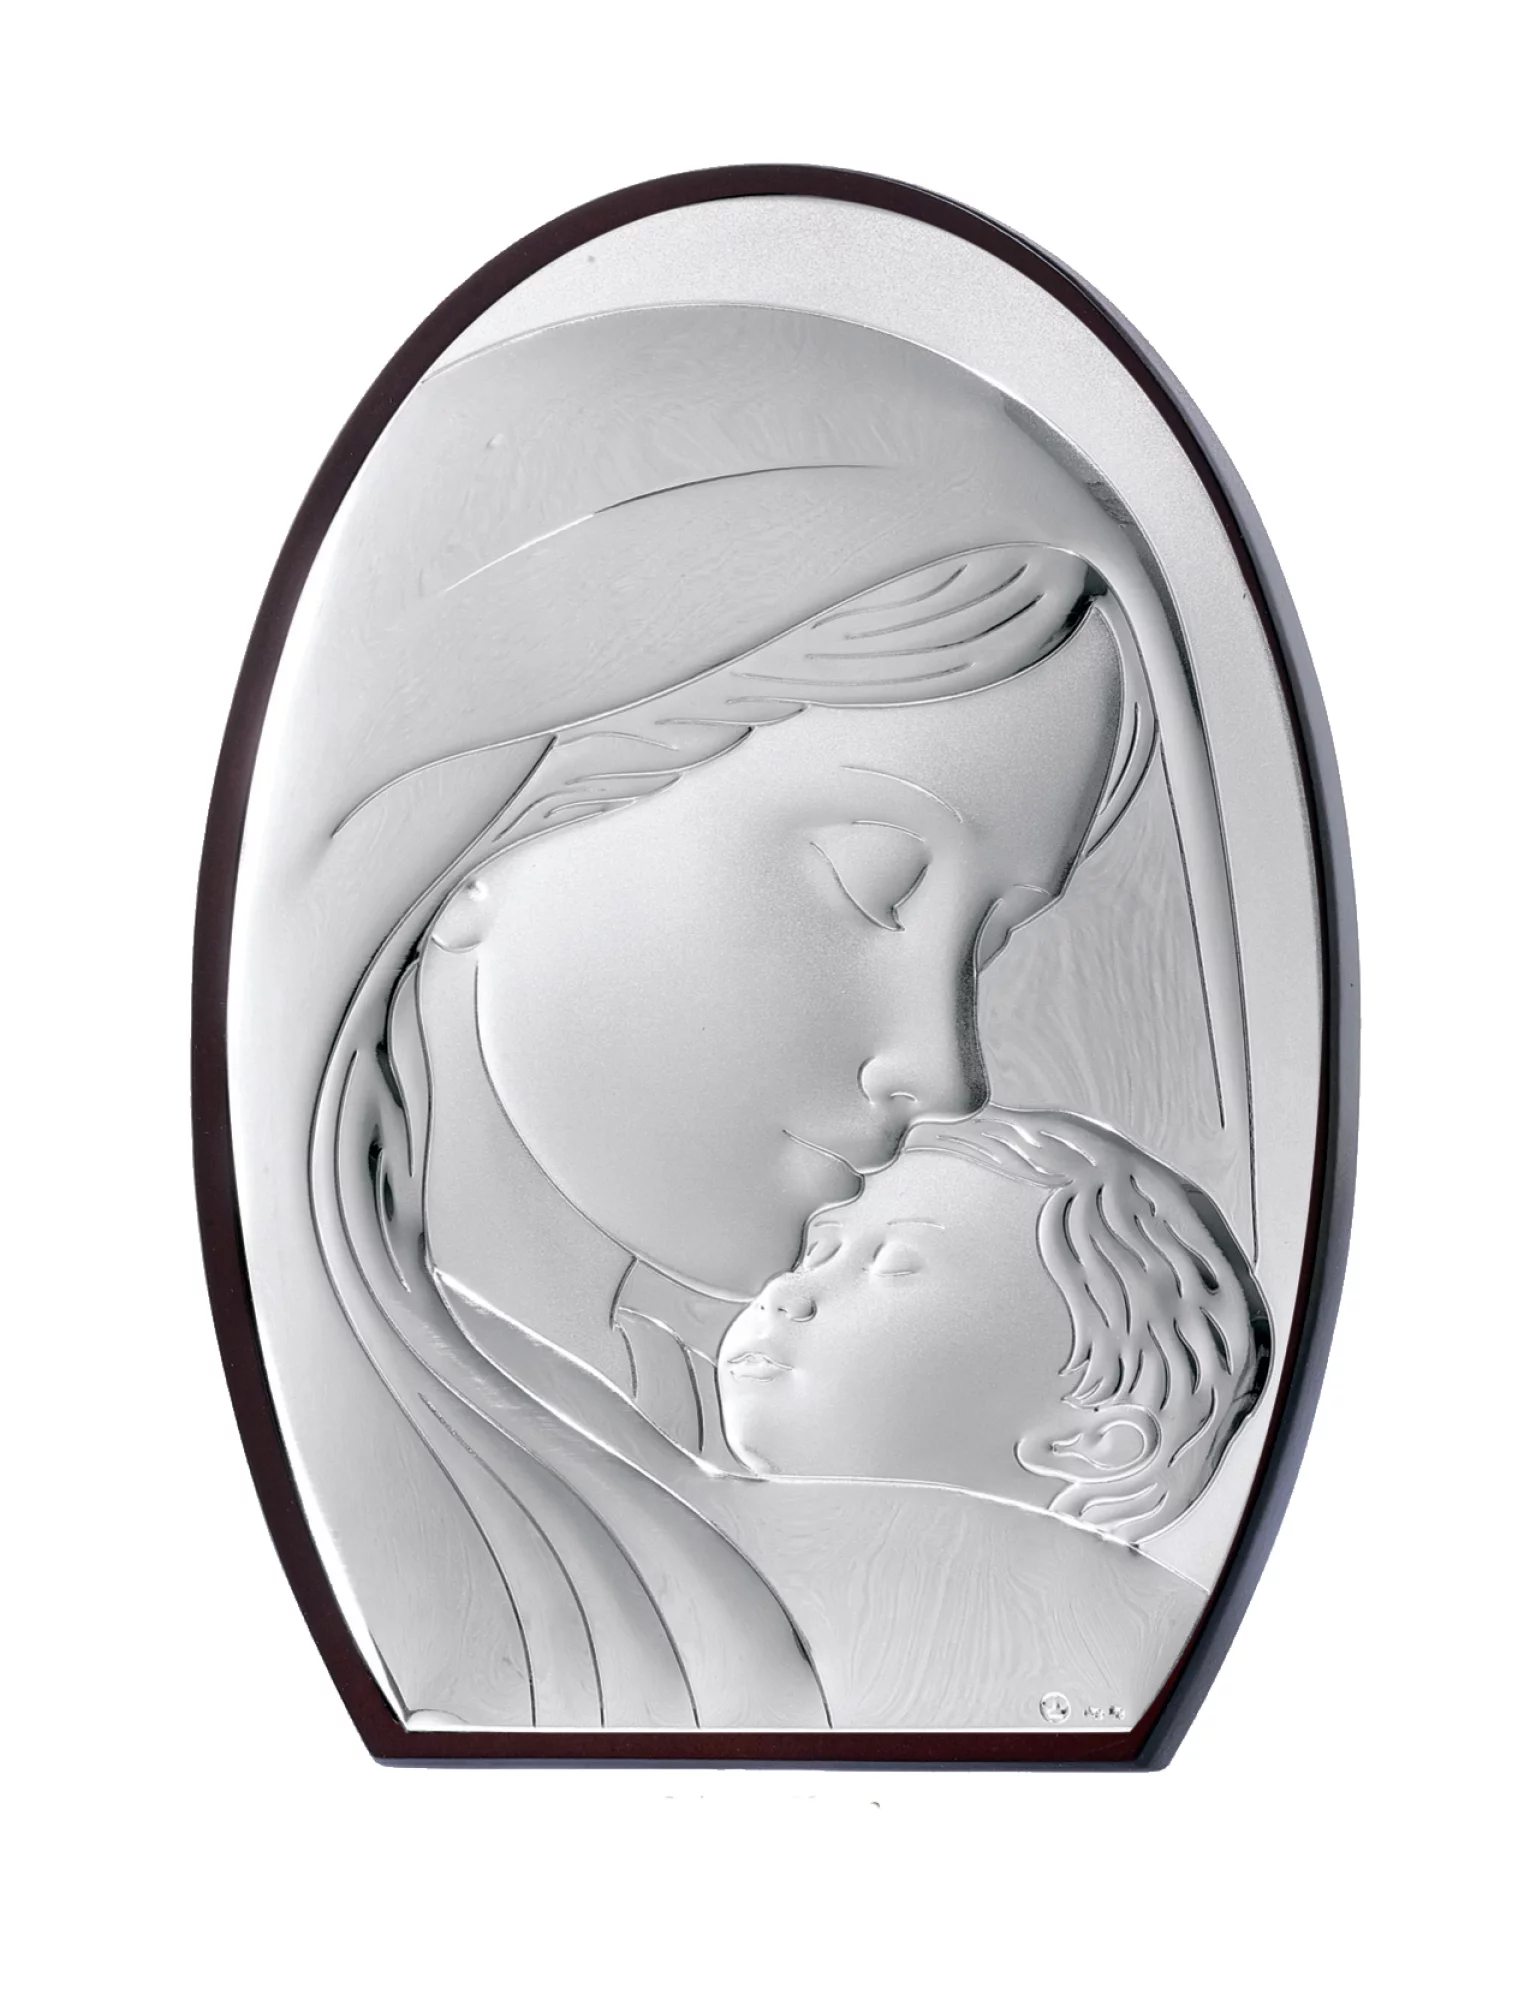 Икона "Божья Матерь с Младенцем" 8x11 - 414492 – изображение 1